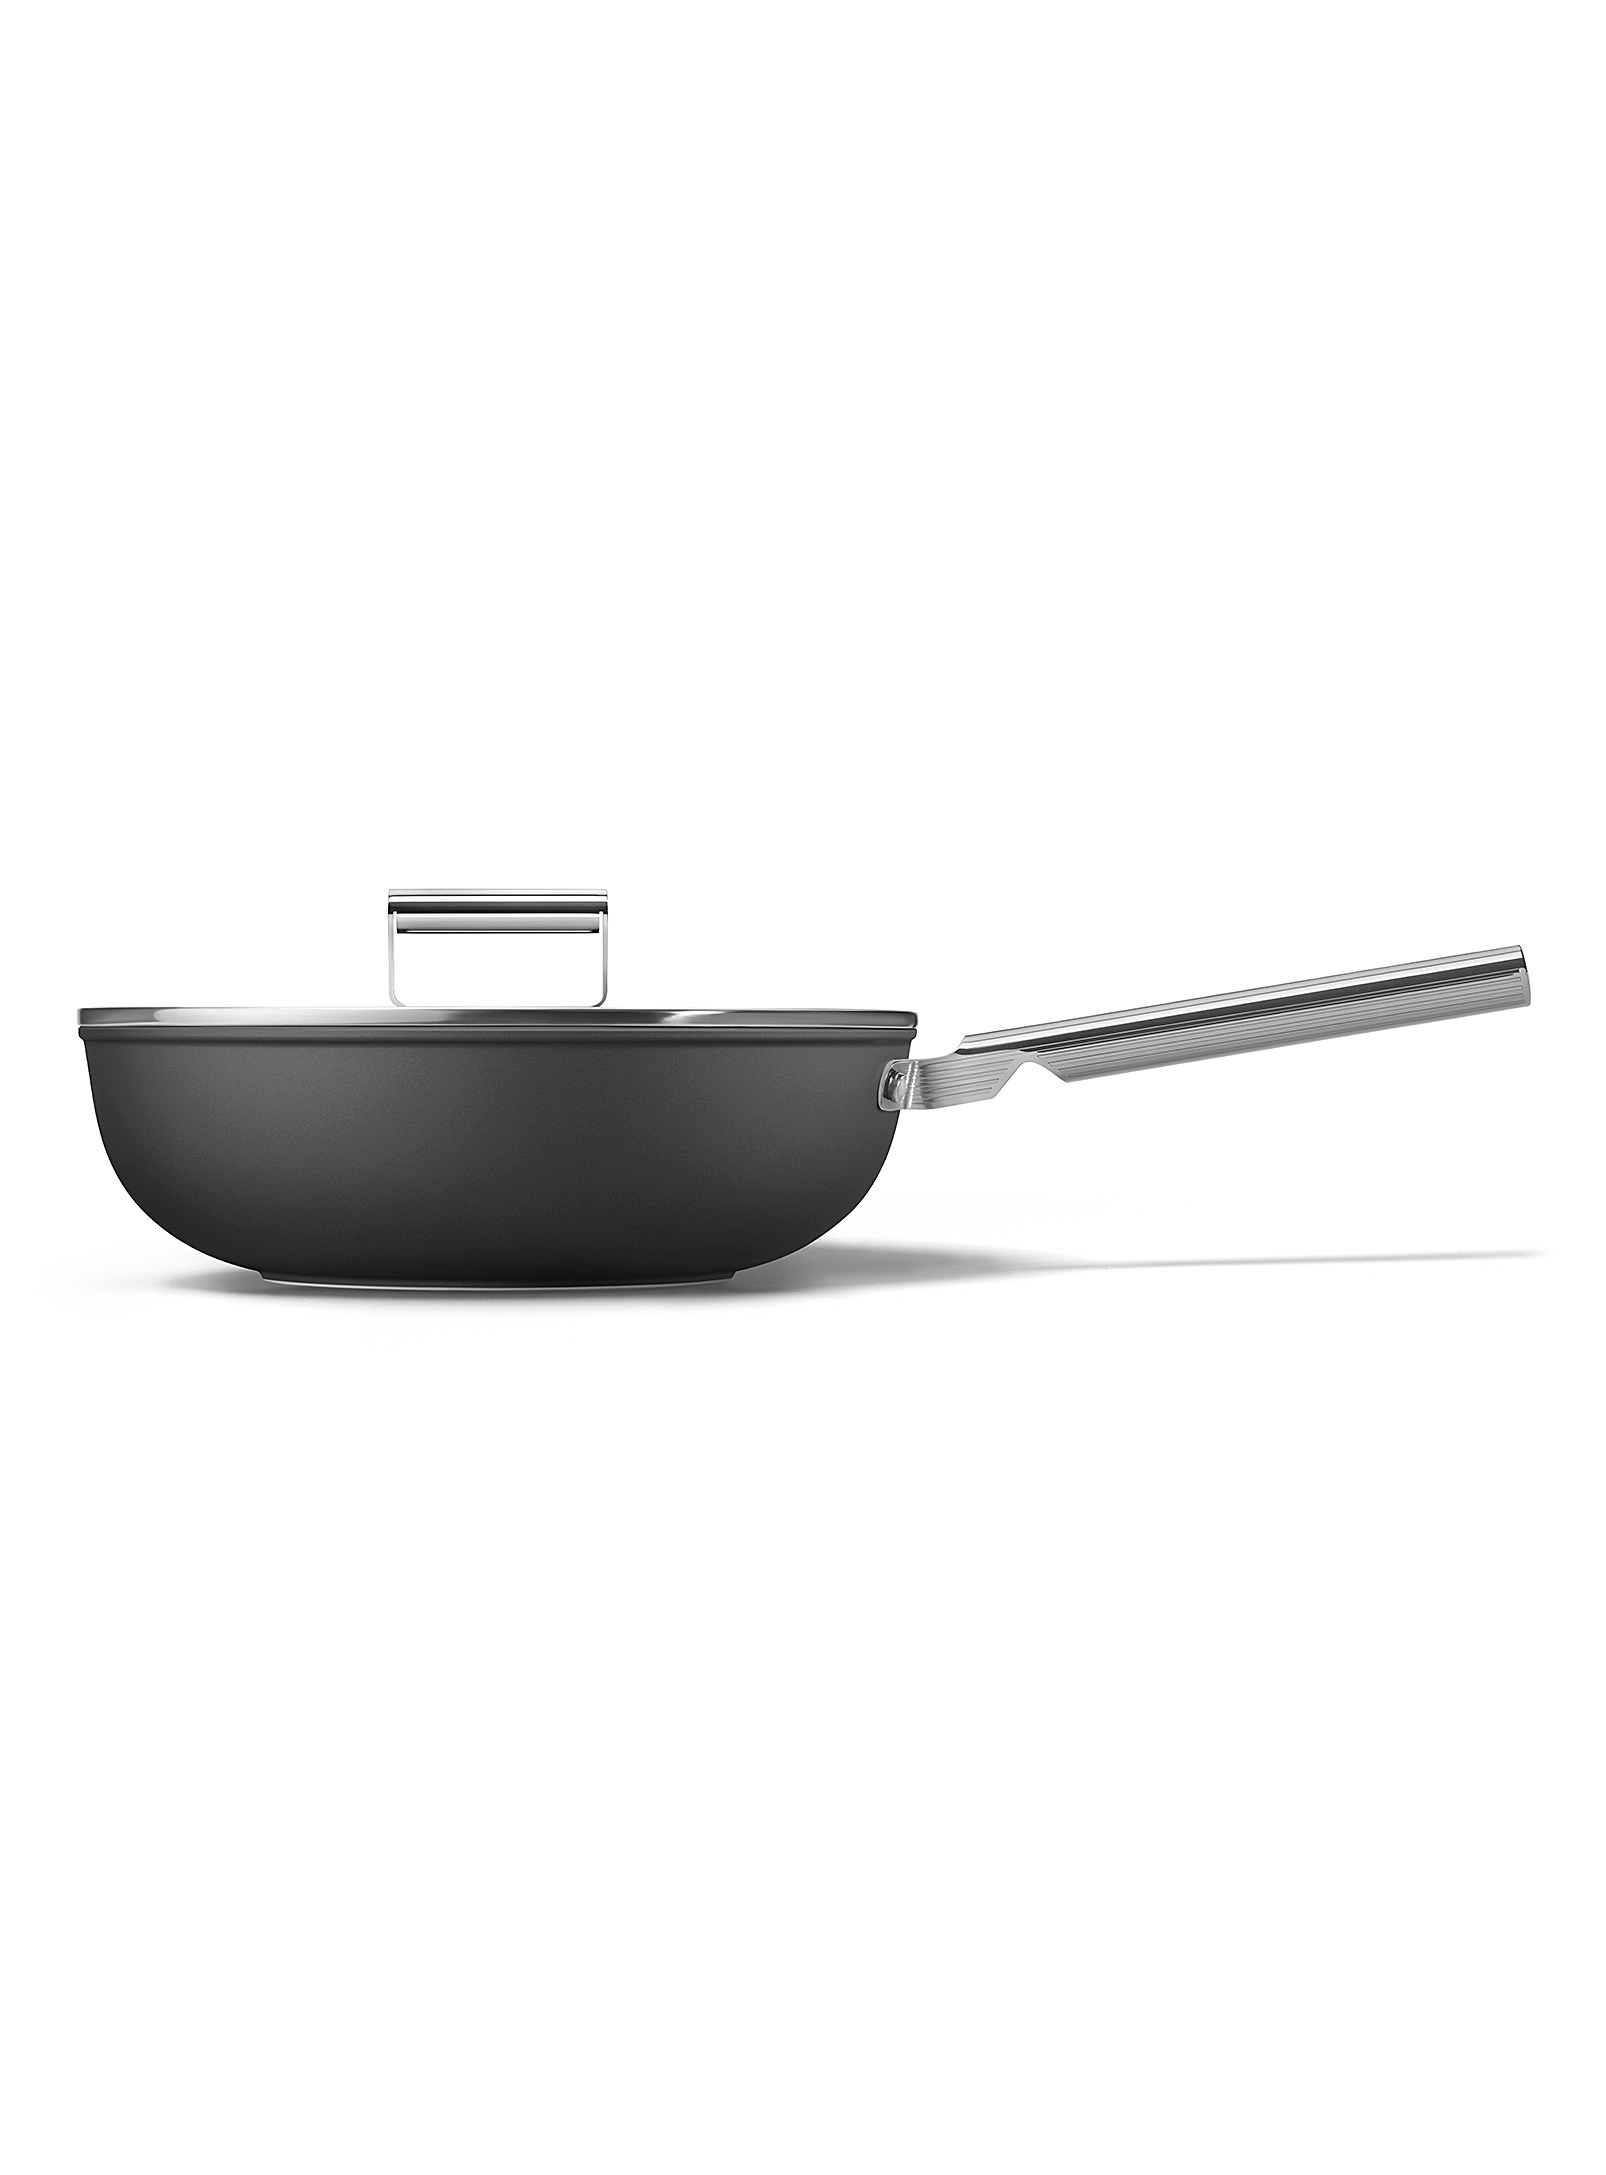 Smeg - Le wok antiadhésif rétro